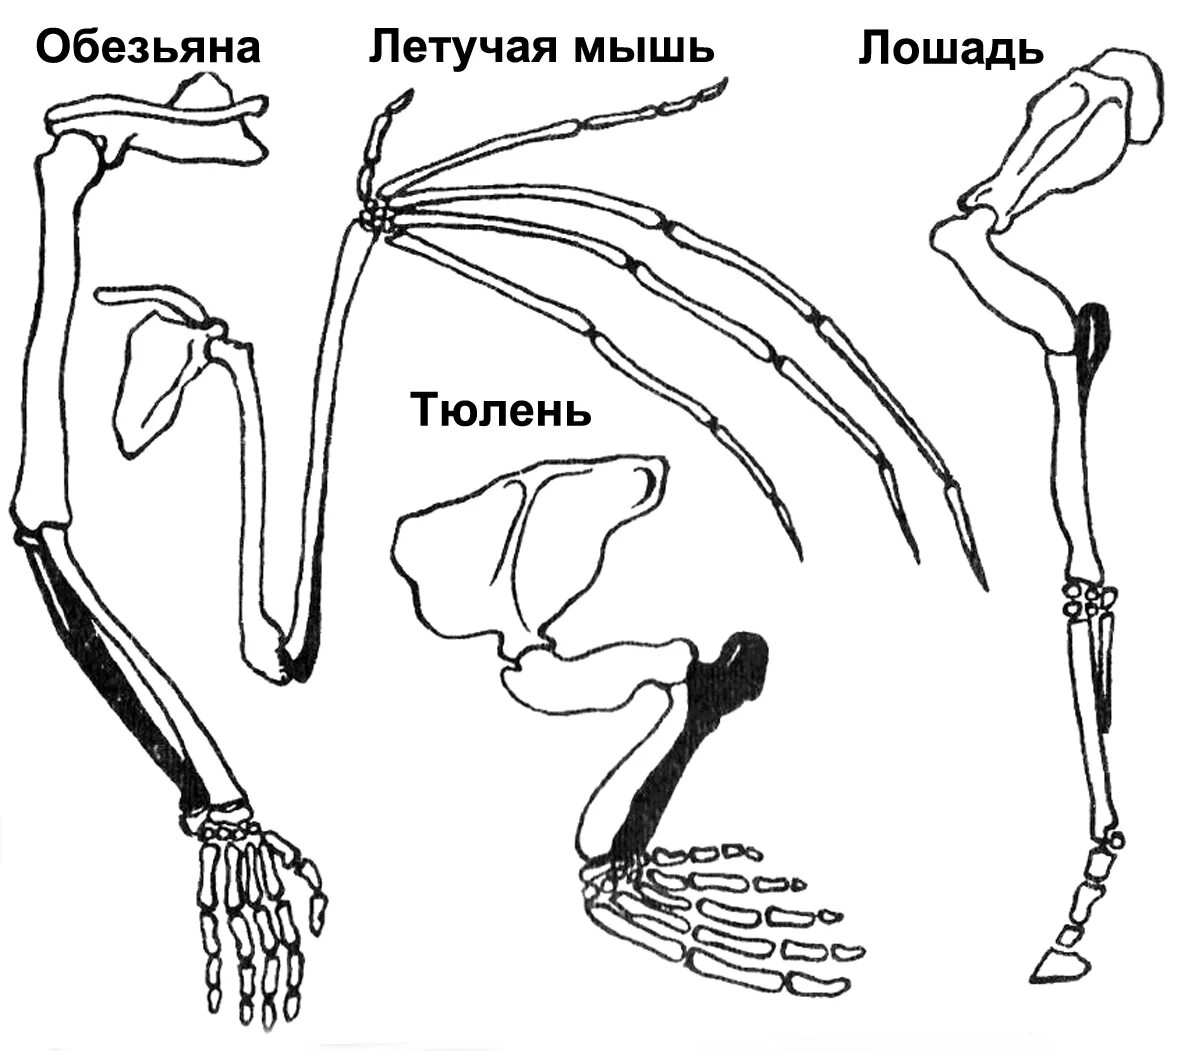 Скелет задних конечностей у млекопитающих. Скелет пояса задних конечностей млекопитающих. Пояс задних конечностей у млекопитающих. Строение задних конечностей млекопитающих. Строение скелета верхней конечности позвоночных животных.